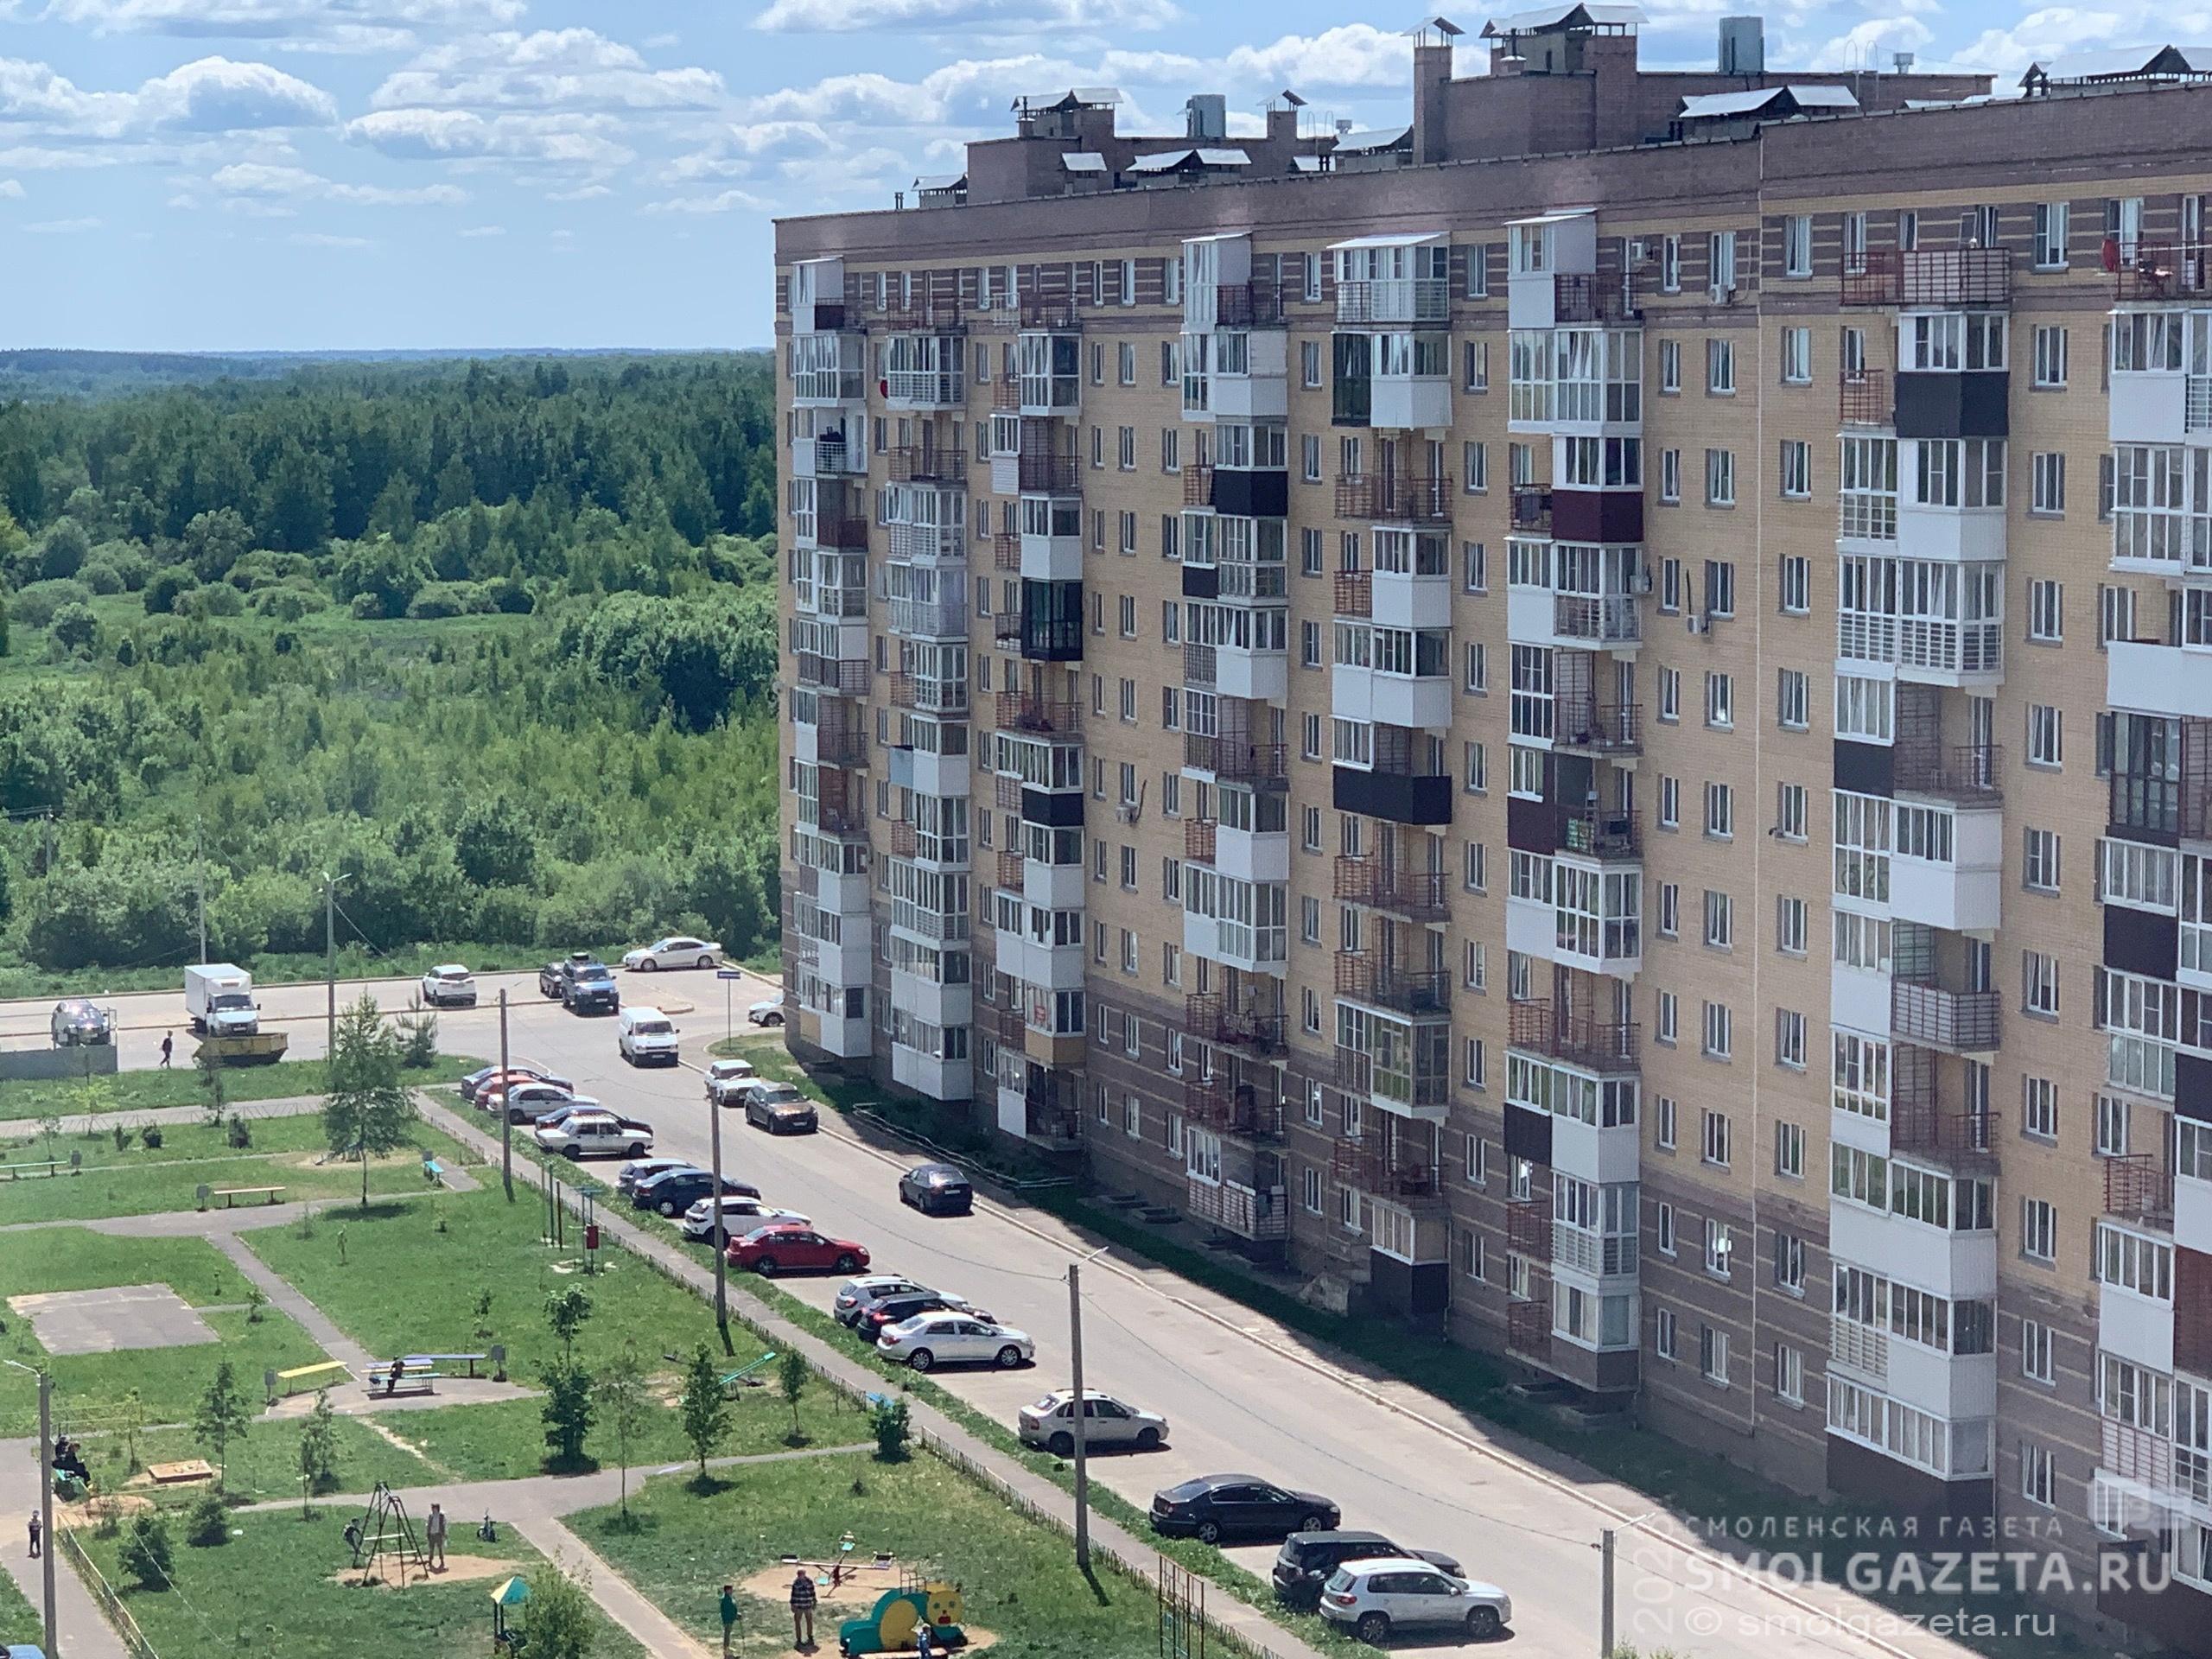 7 июня в Смоленской области воздух прогреется до +25°C